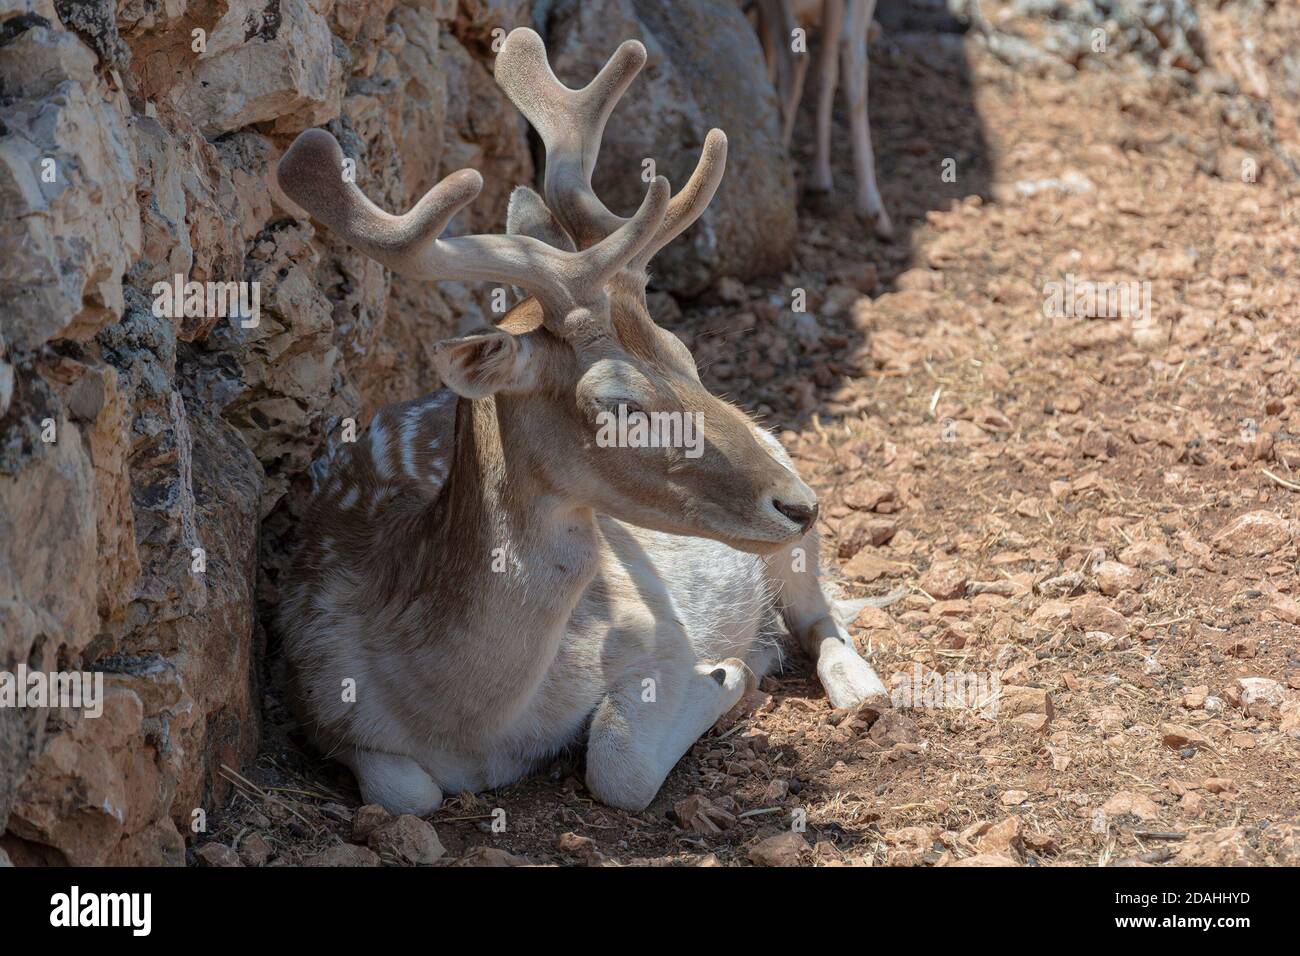 Fauna selvatica. Il cervo si trova vicino ad un muro di pietra. Fotografia di scorta Foto Stock